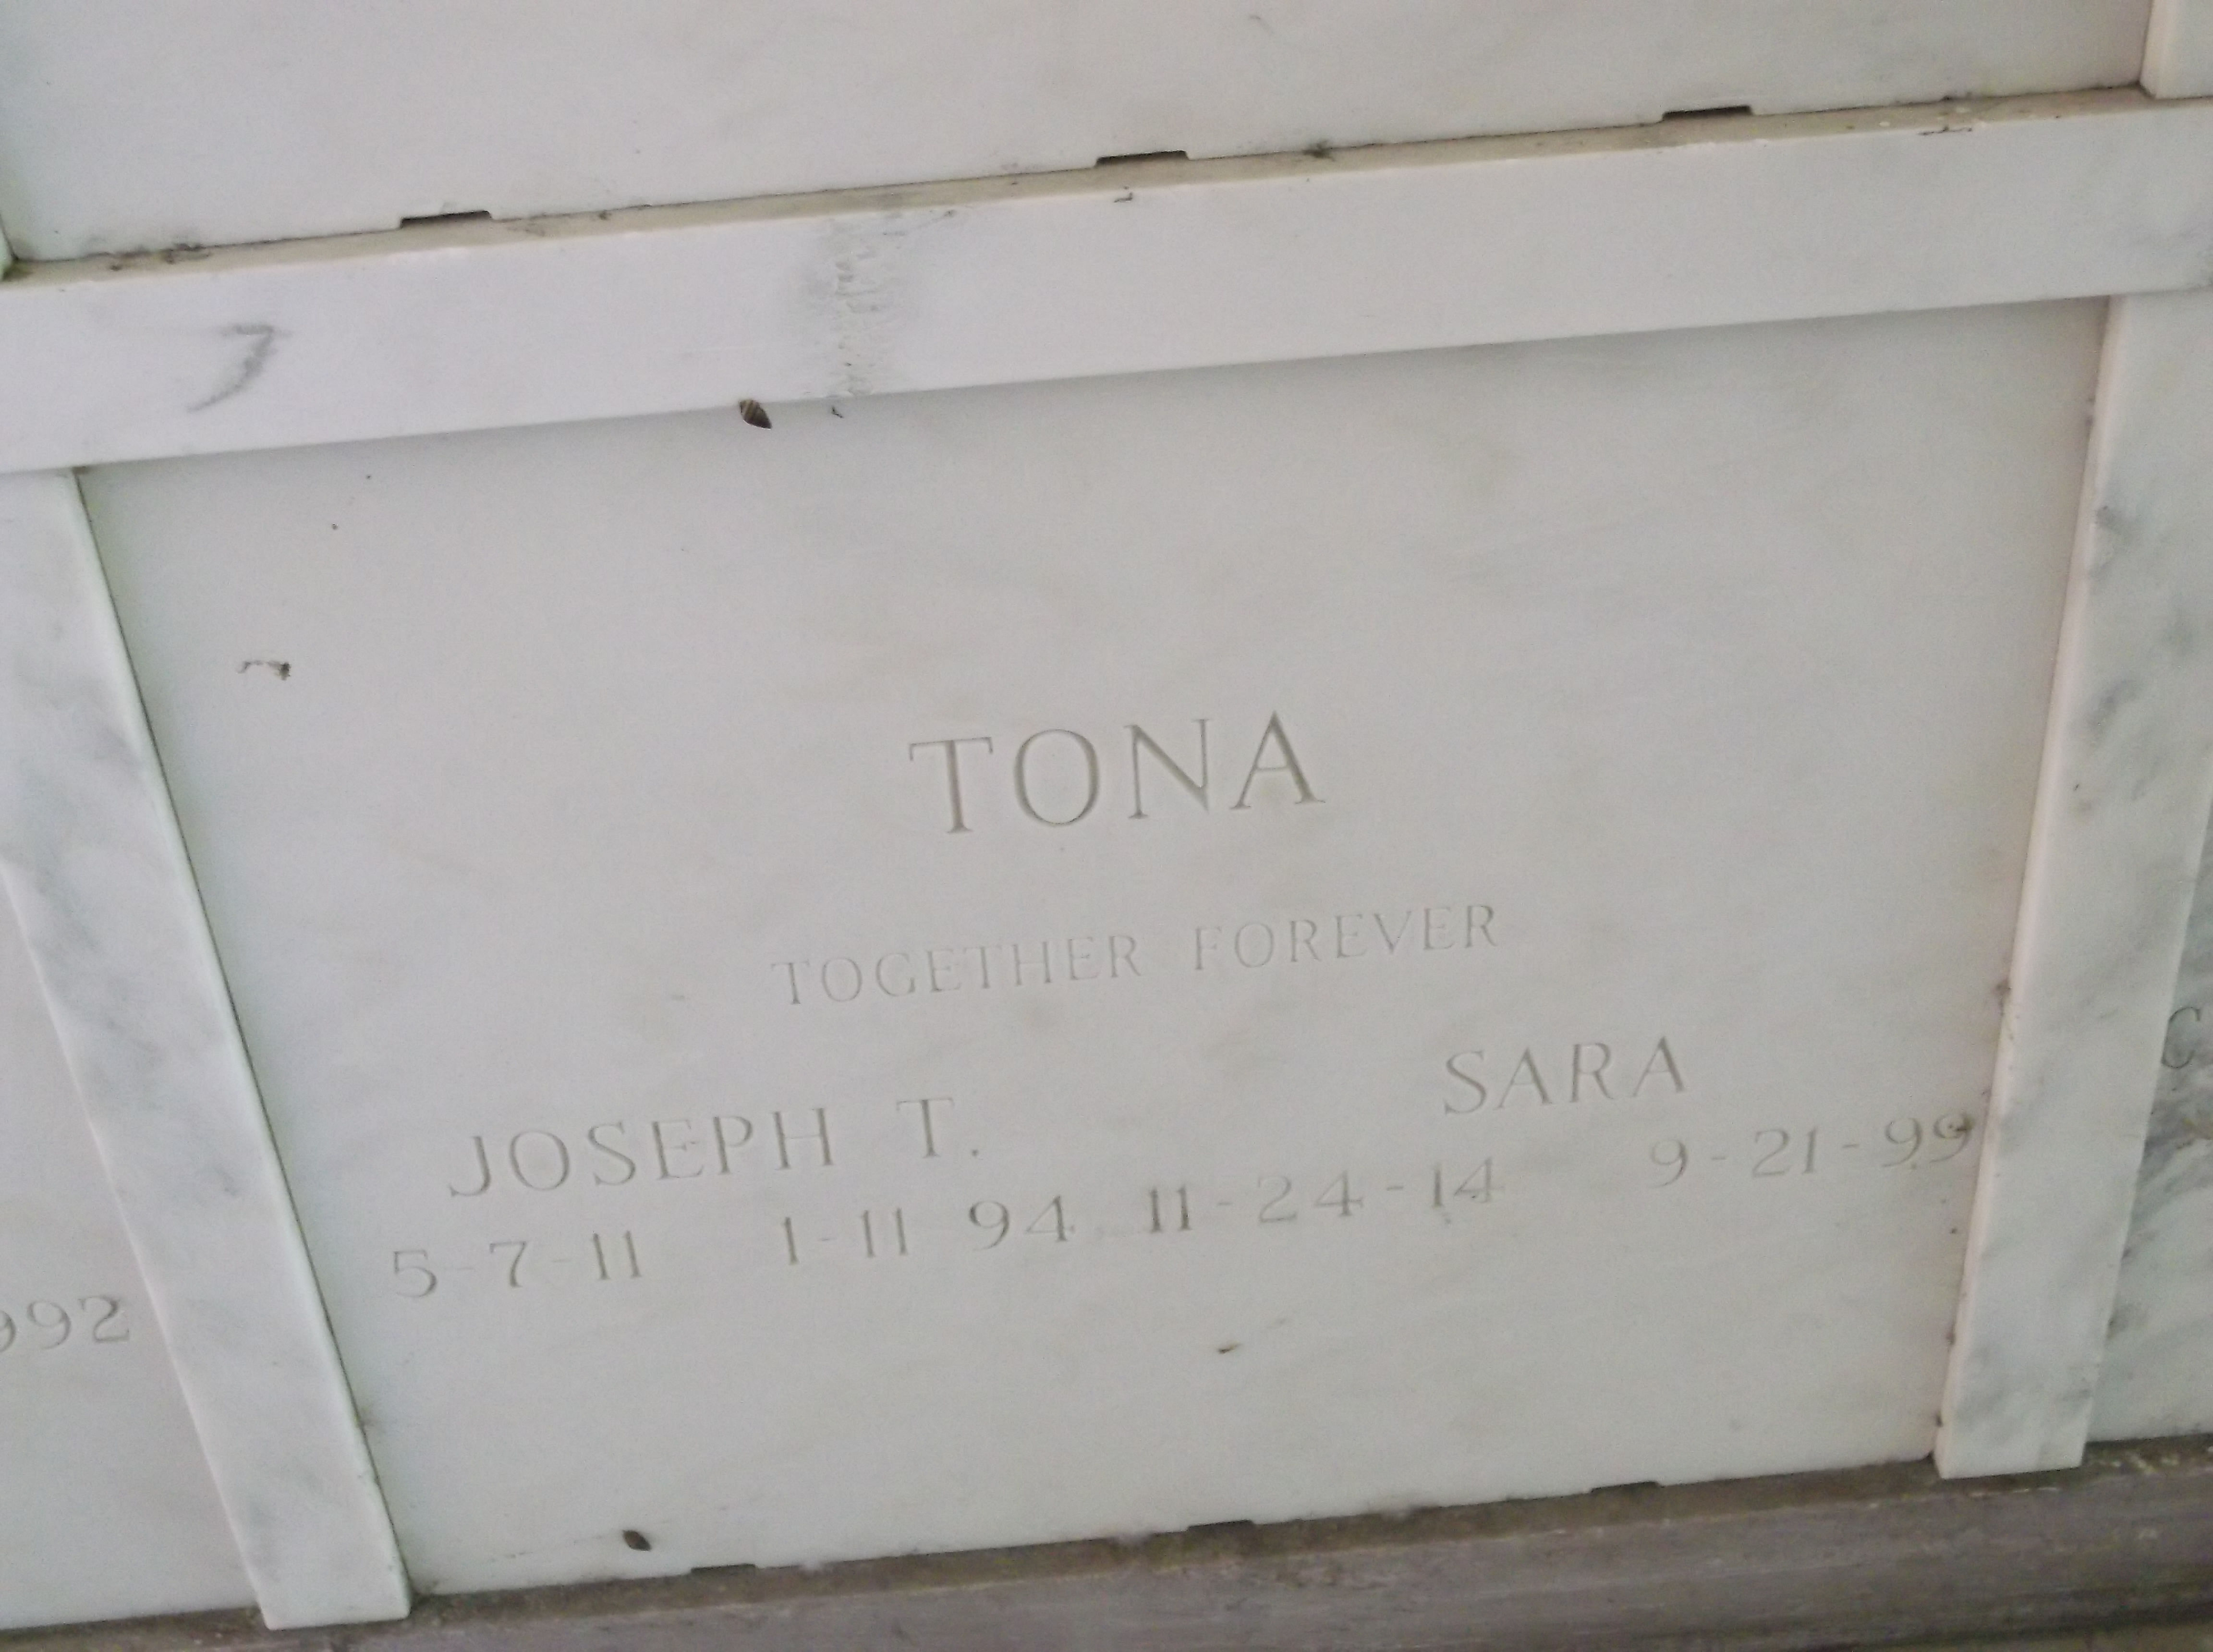 Joseph L Tona